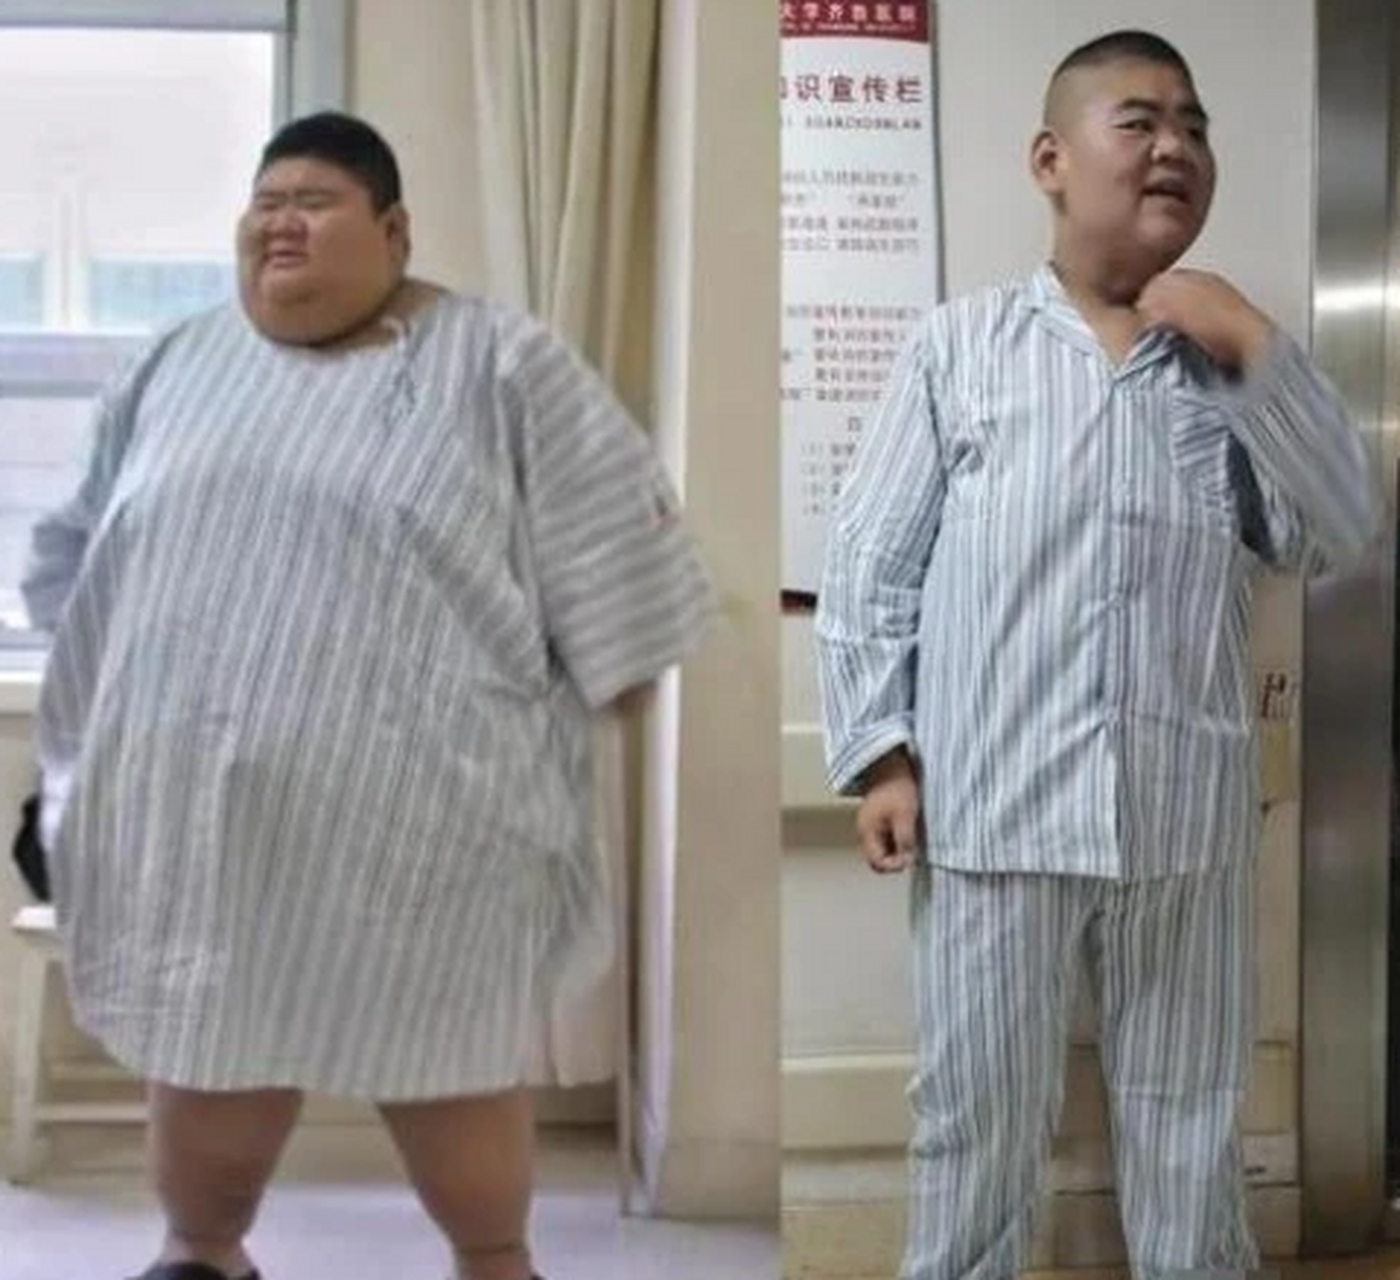 号称"山东第一胖"的网红王浩楠,靠切胃减肥400多斤,如今又复胖了.